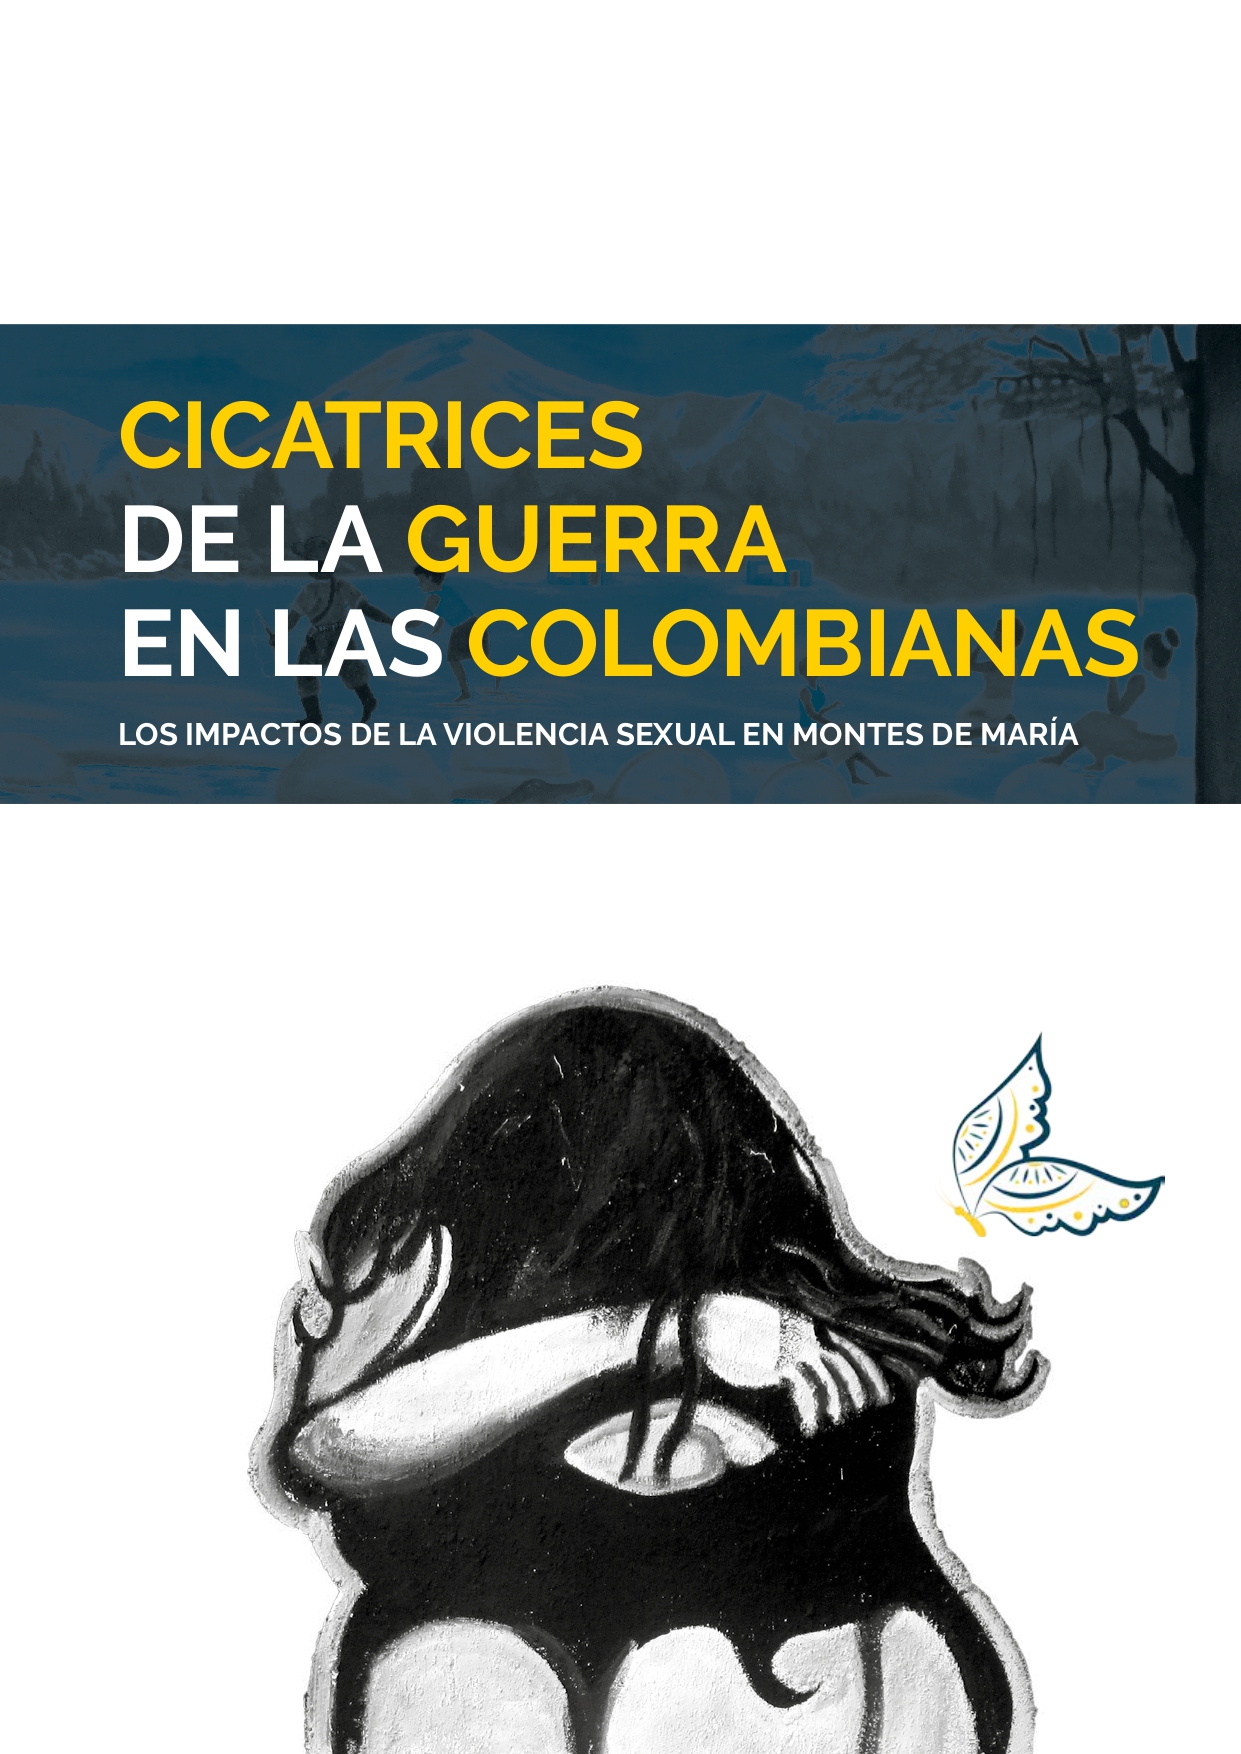 CICATRICES DE LA GUERRA EN LAS COLOMBIANAS foto